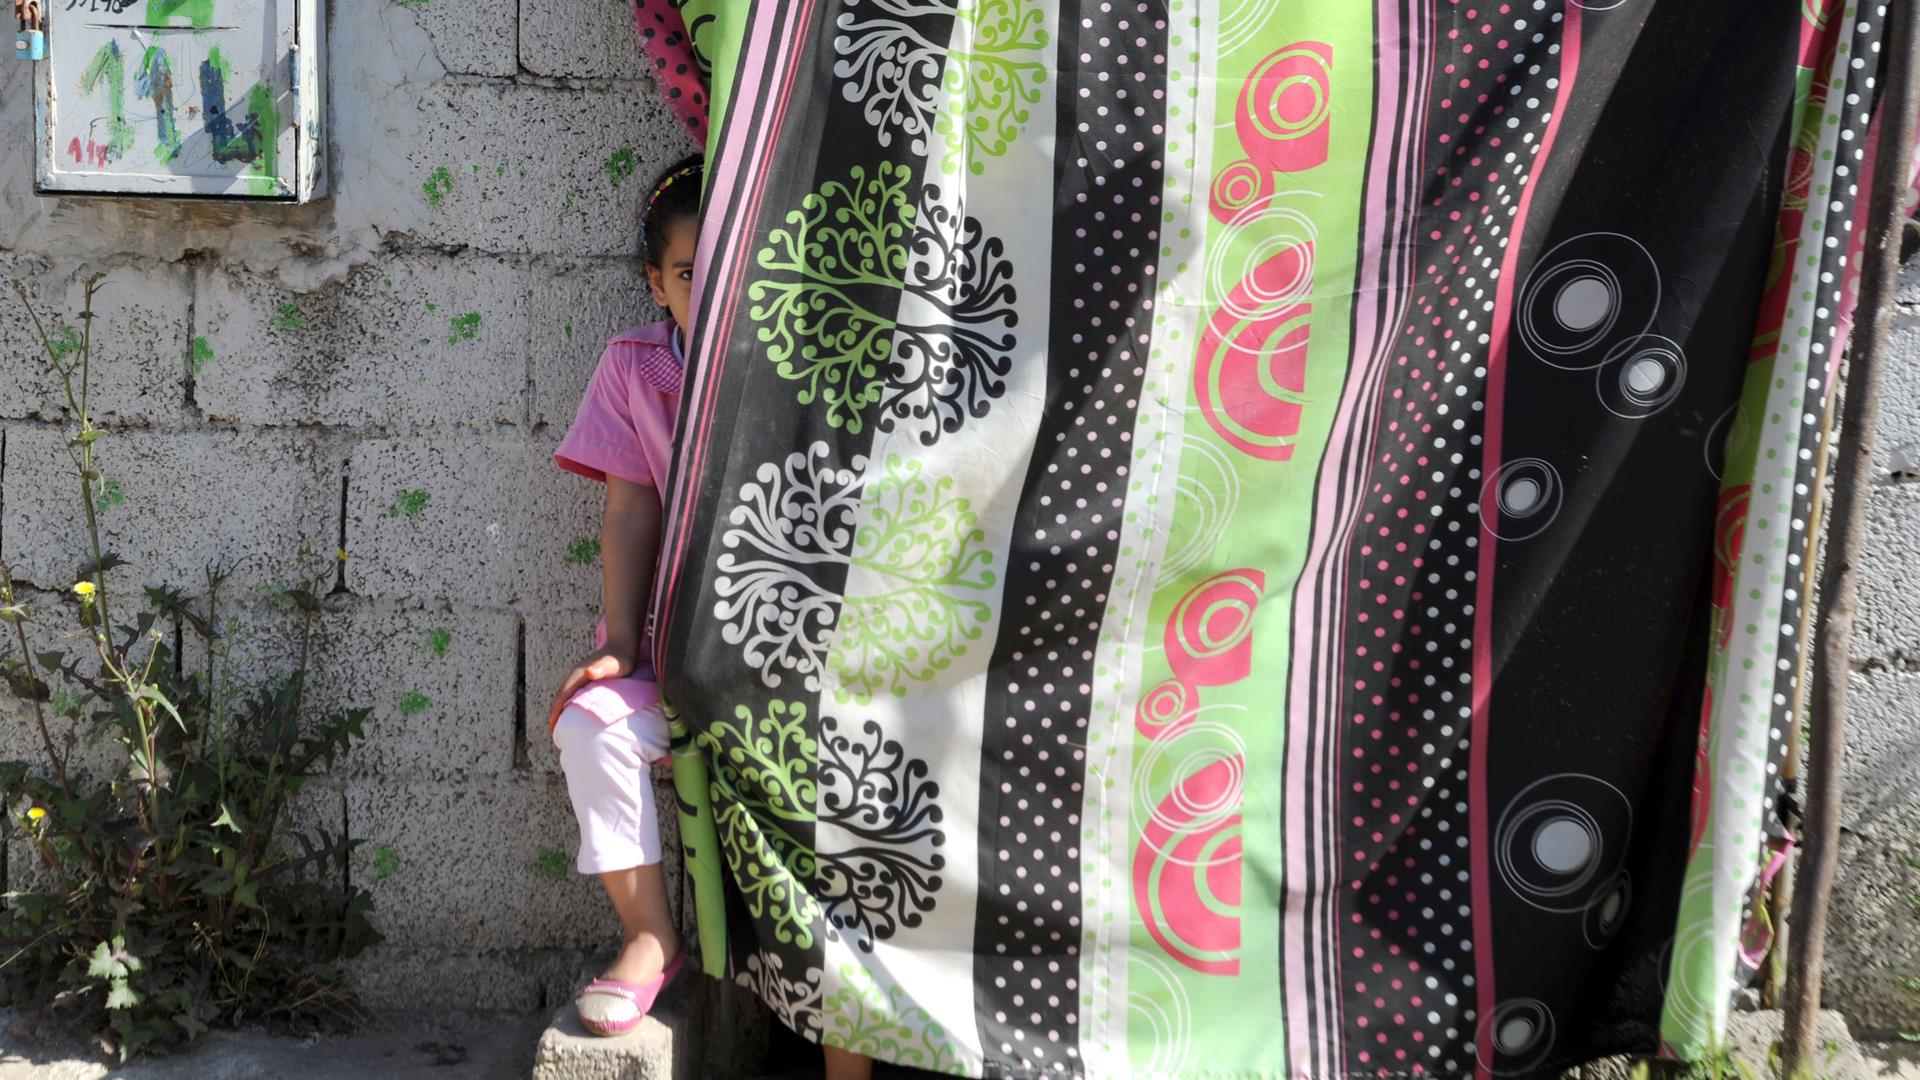 Bambini Kafala Algeria Adozioniead FAROUK BATICHE:AFP:Getty Image